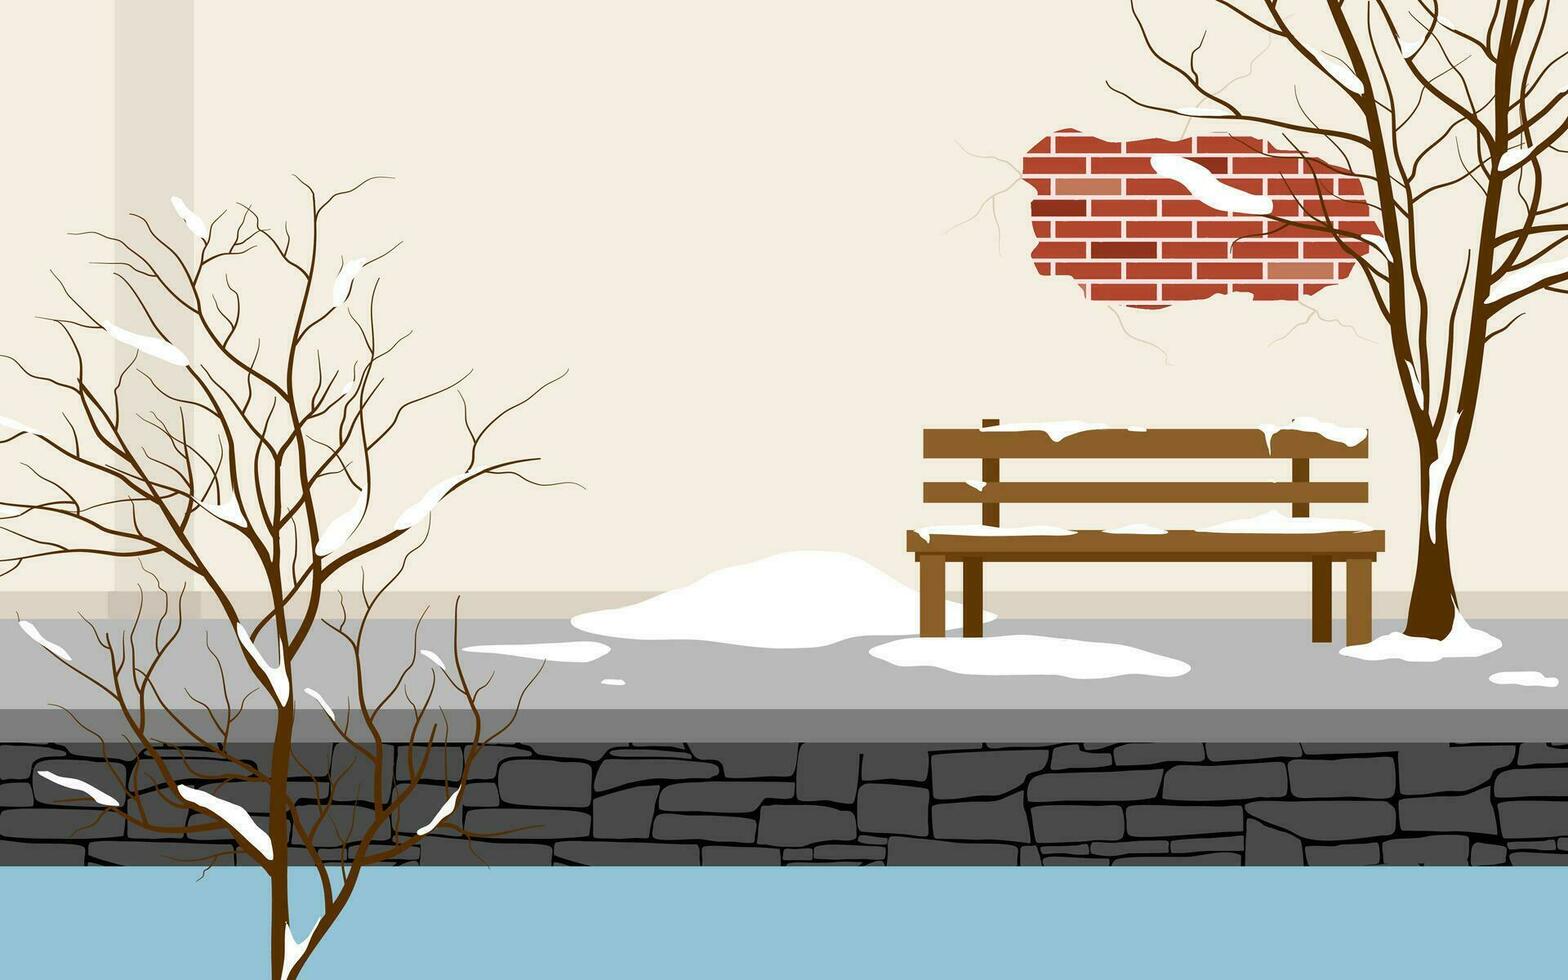 inverno dentro a Cidade ilustração, de madeira Banco e árvore com neve vetor